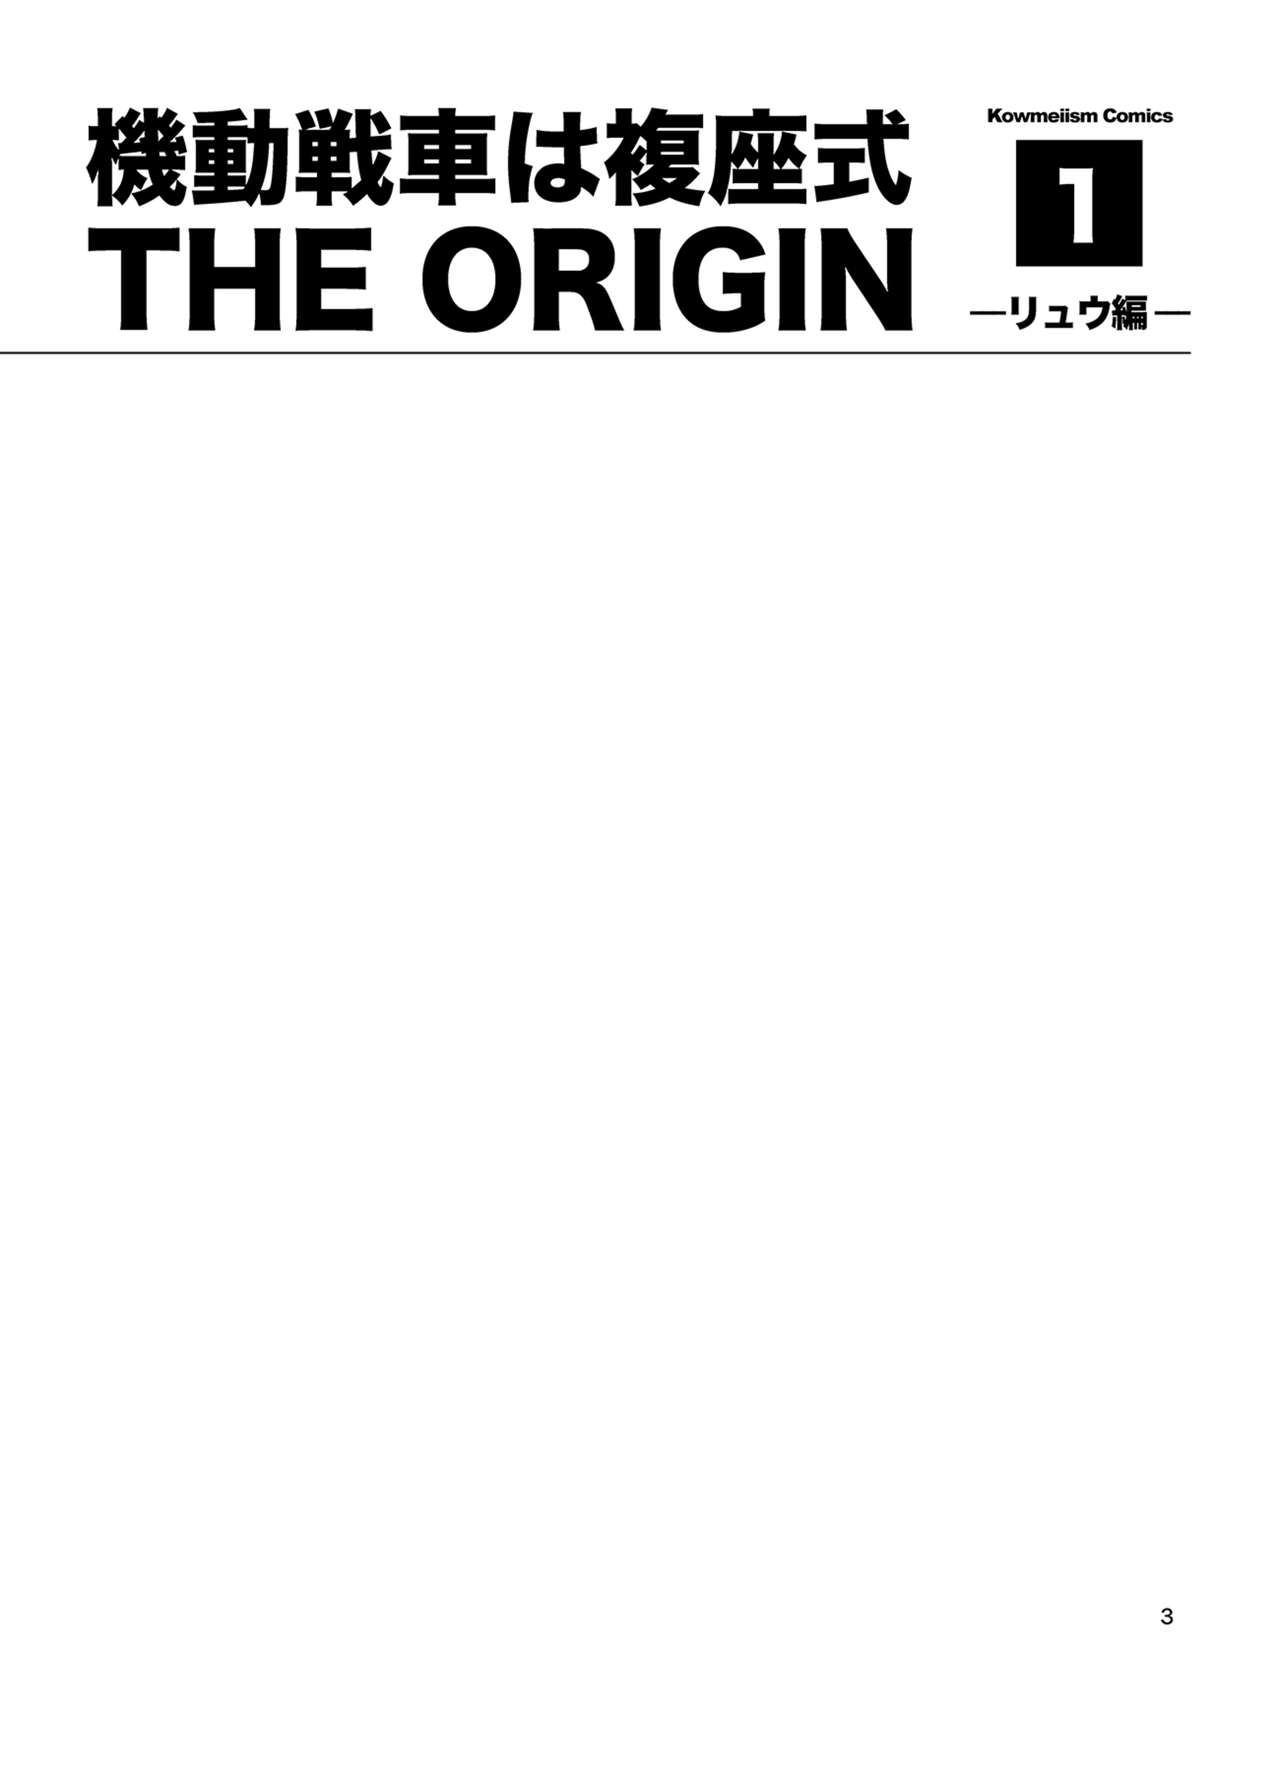 Kidou Sensha wa Fukuzashiki THE ORIGIN numero d'image 2